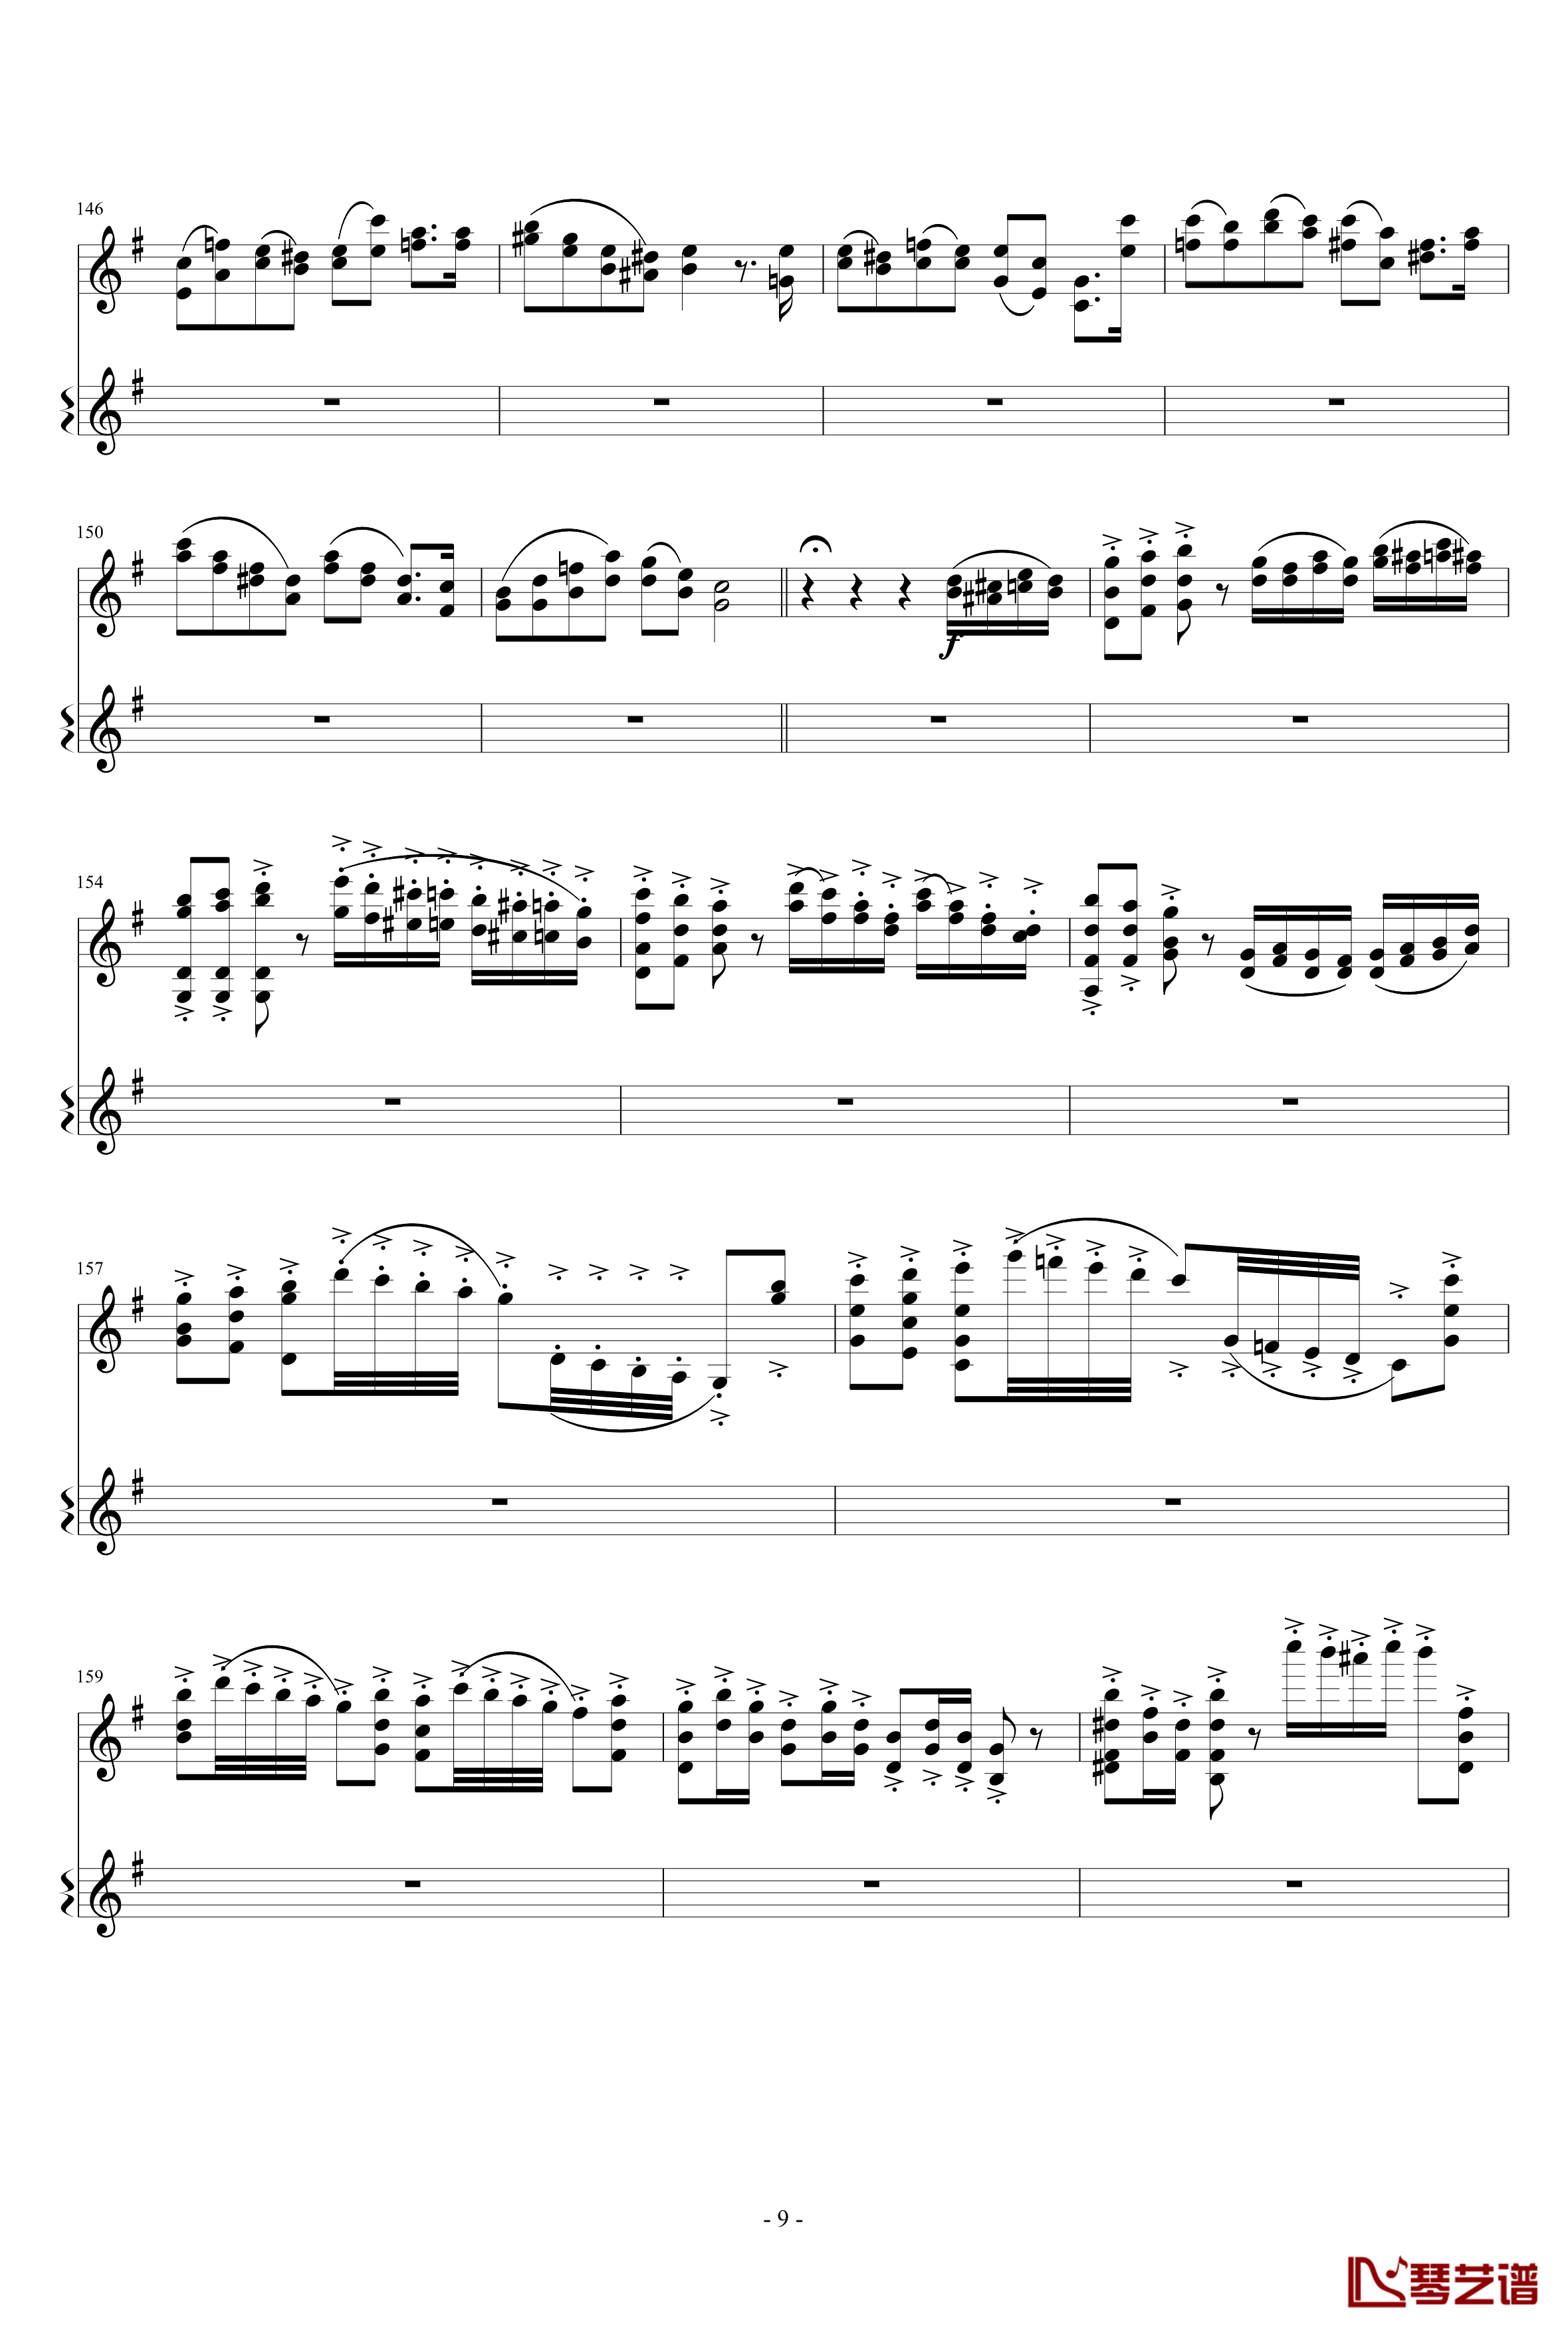 意大利国歌变奏曲钢琴谱-只修改了一个音-DXF9